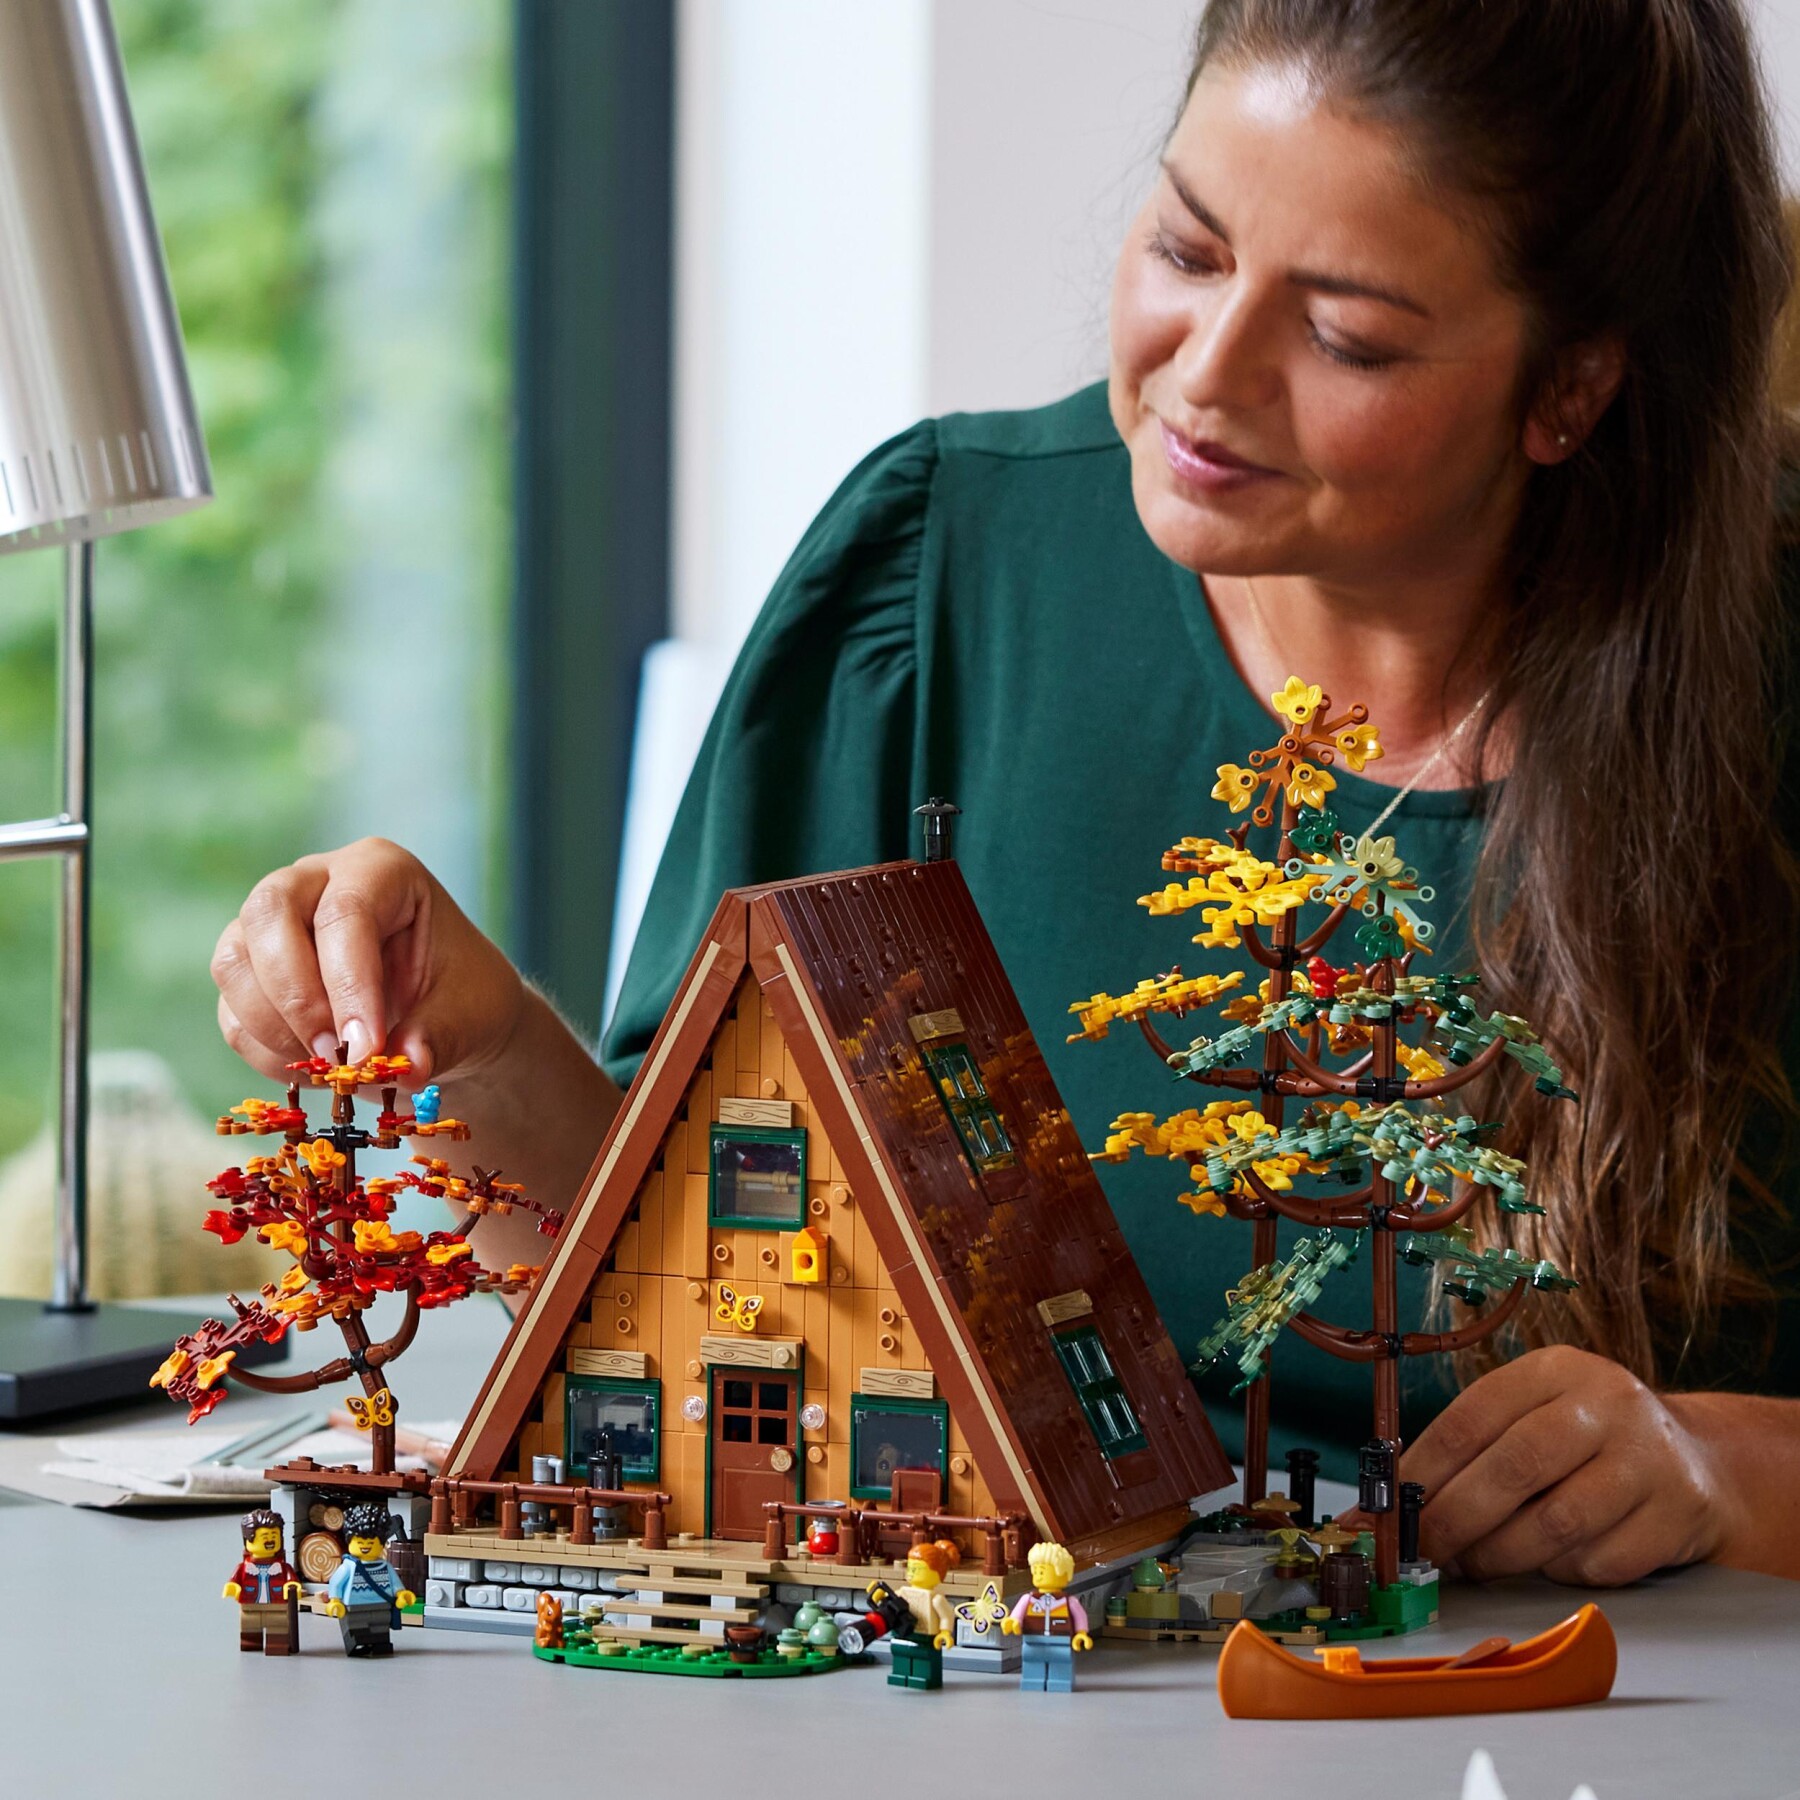 Lego ideas 21338 baita, kit modellino casa da costruire per adulti con 4 minifigure personalizzabili e di animali selvatici - LEGO IDEAS